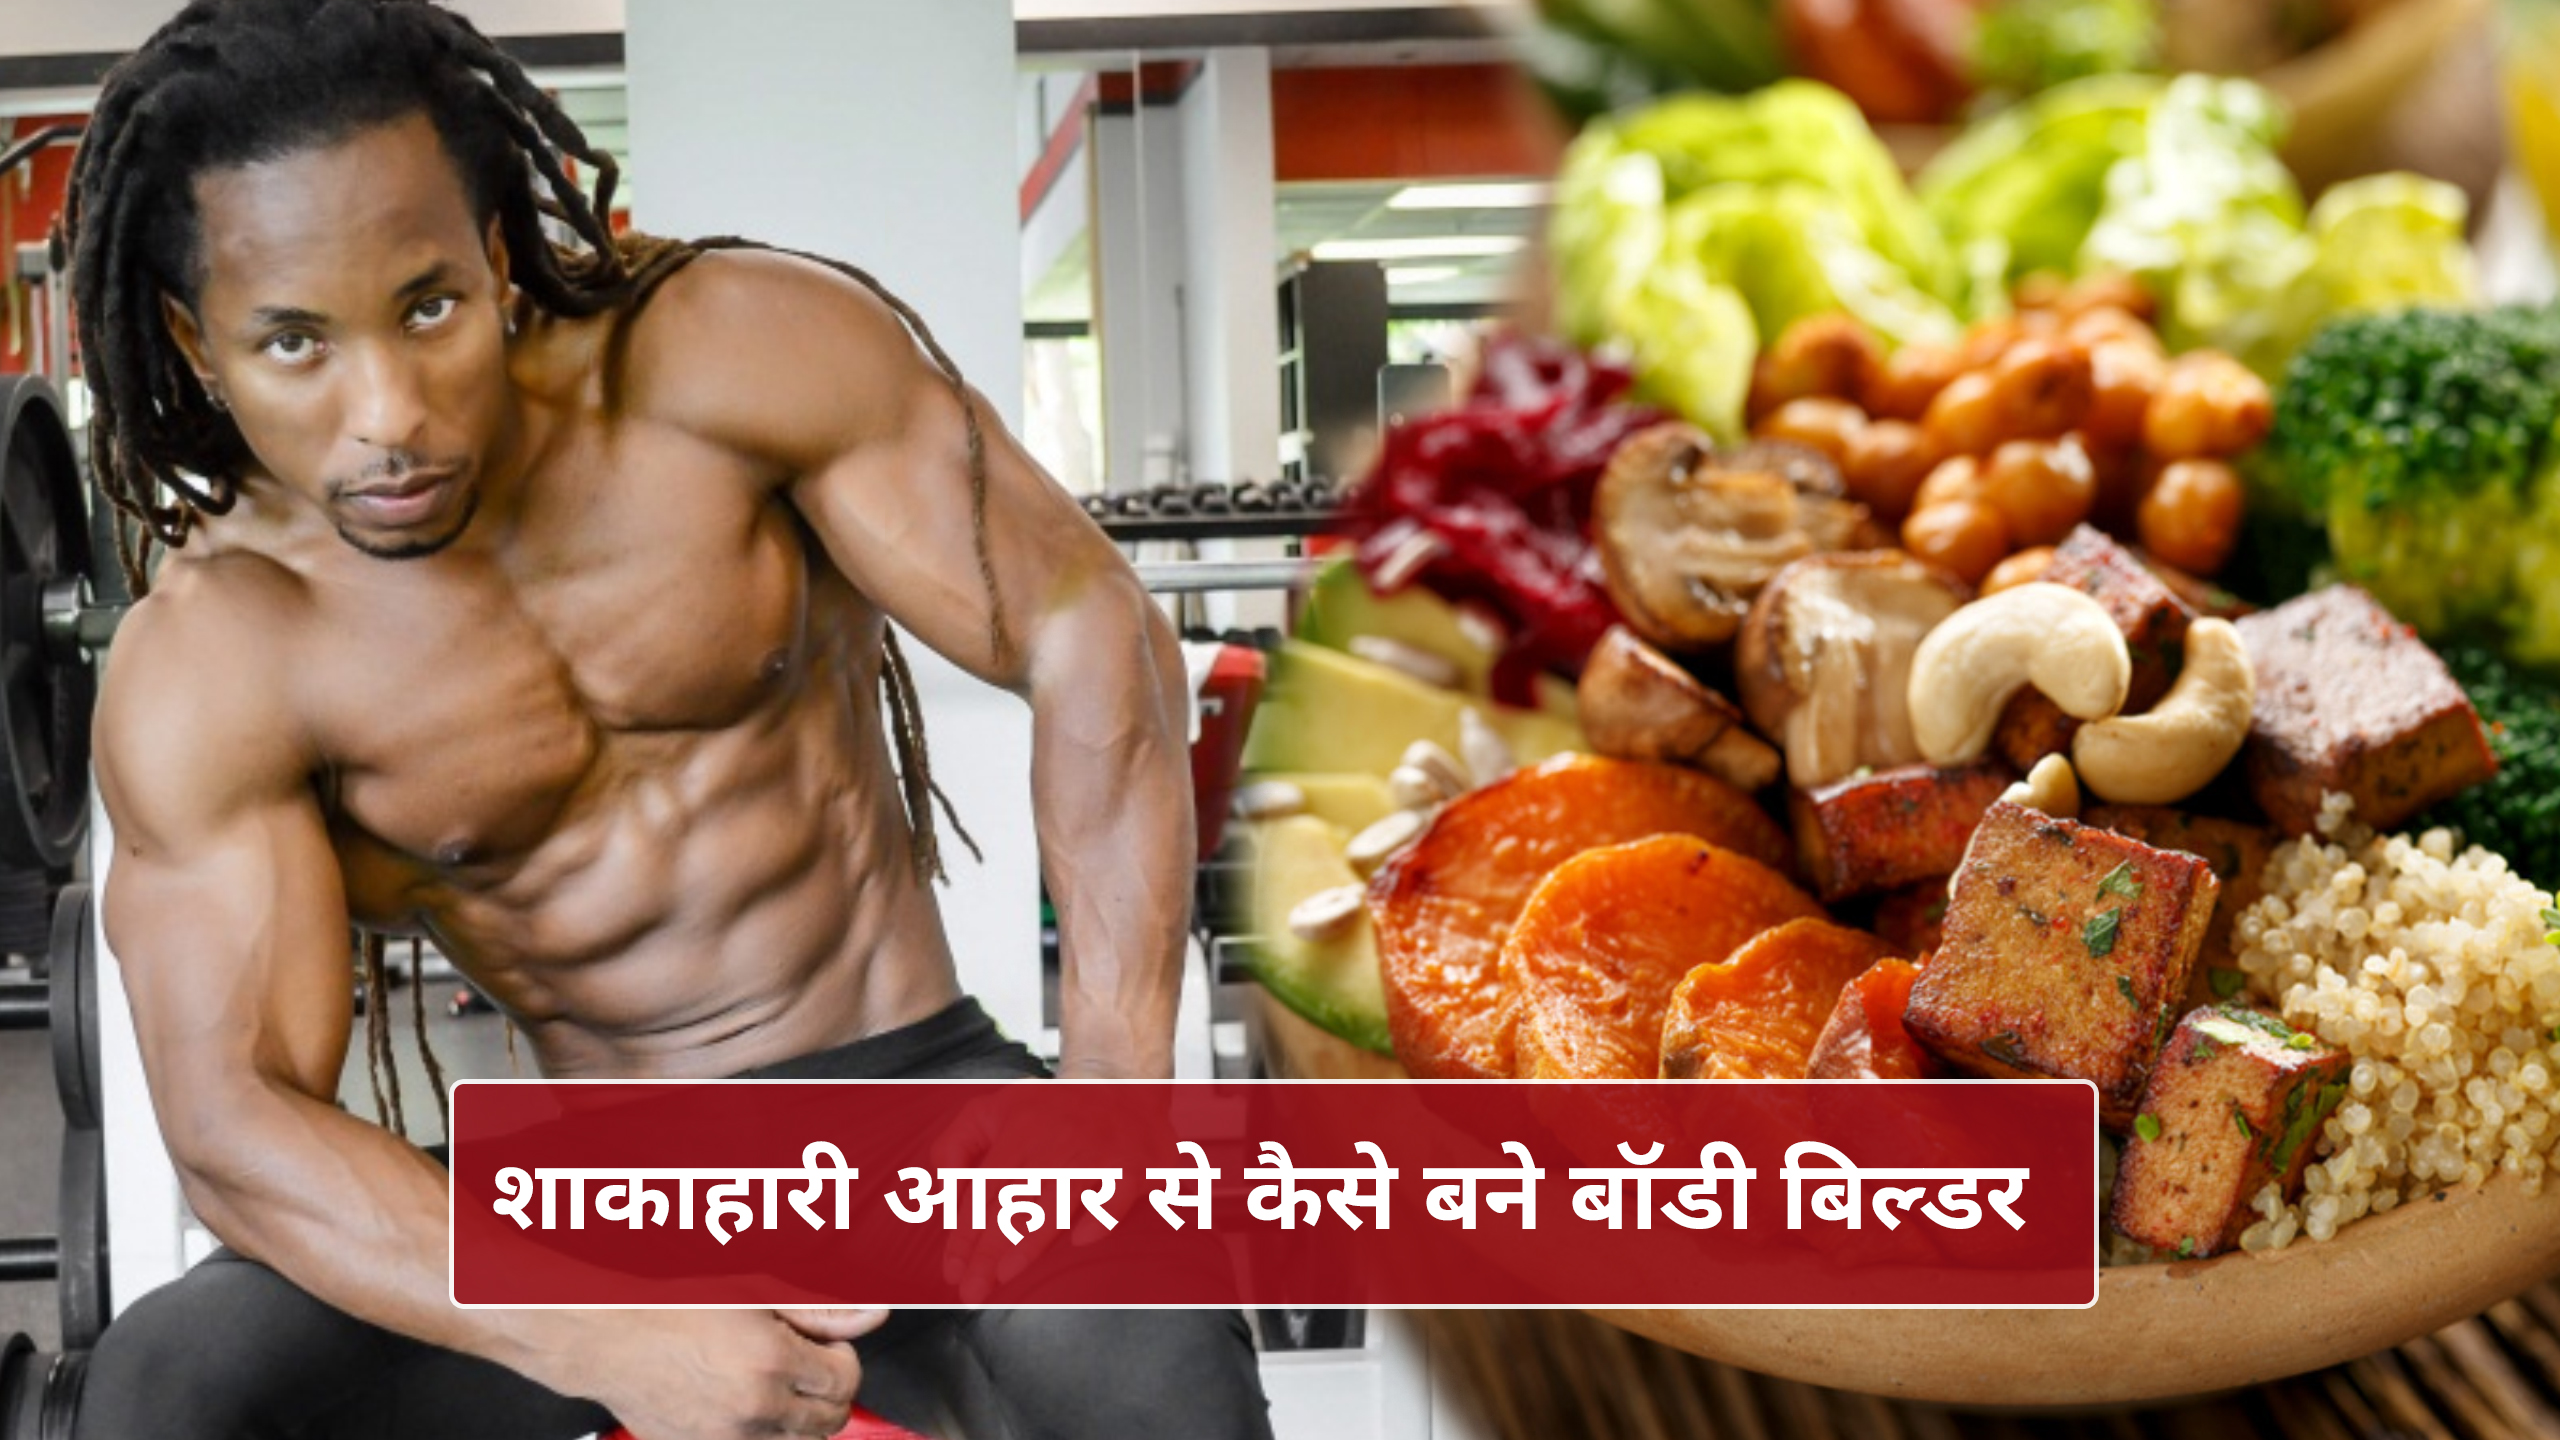 Vegetarian Food For Bodybuilding: शाकाहार से भी बनाई जा सकती है अच्छी बॉडी